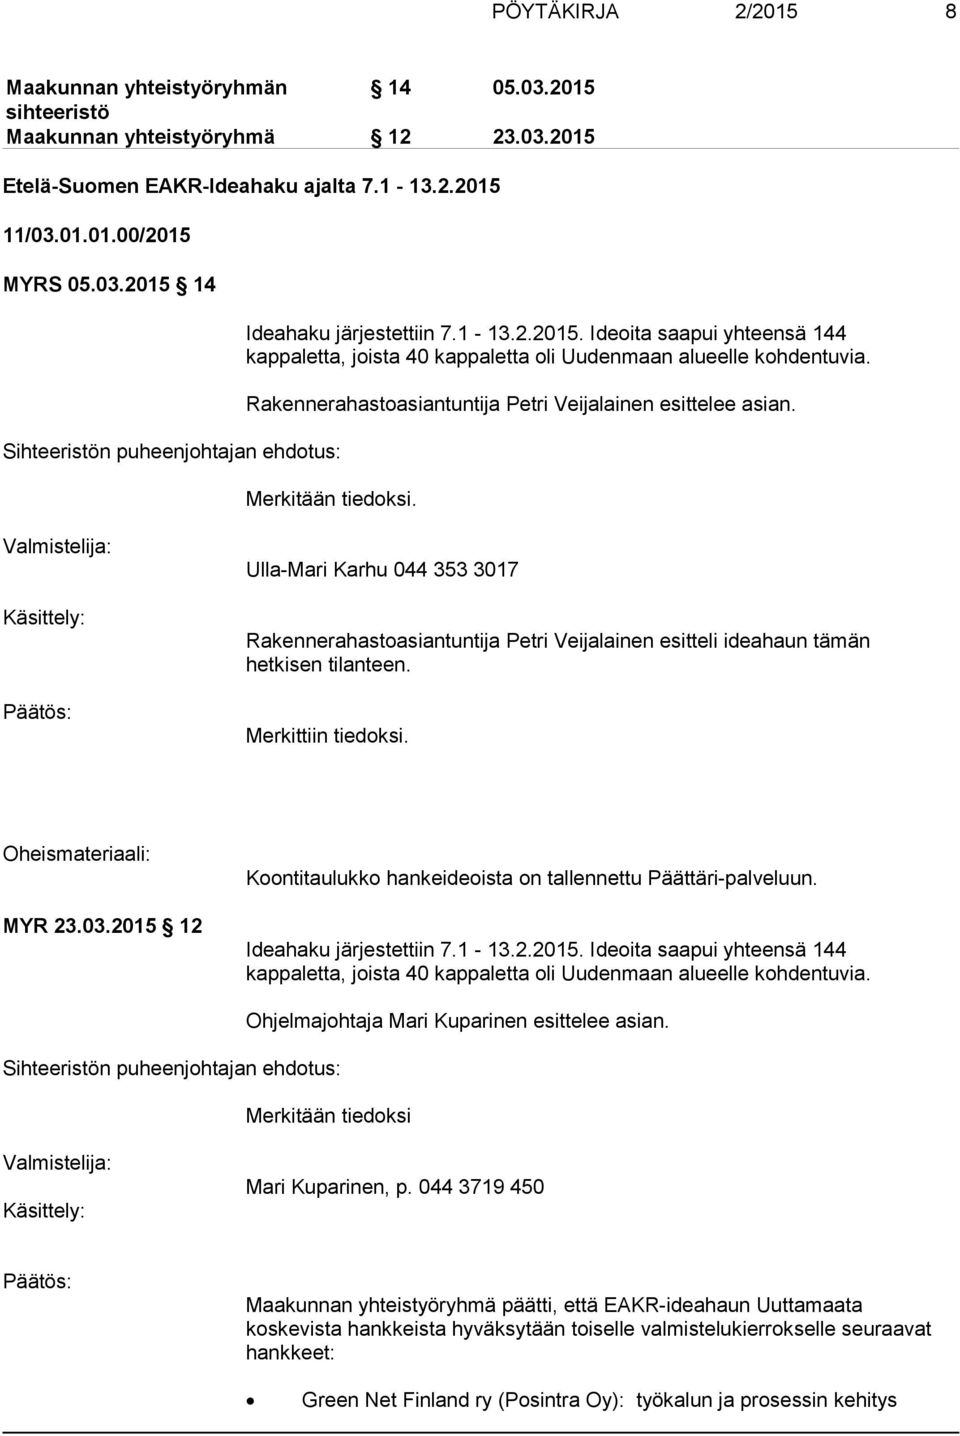 Valmistelija: Käsittely: Ulla-Mari Karhu 044 353 3017 Rakennerahastoasiantuntija Petri Veijalainen esitteli ideahaun tämän hetkisen tilanteen. Merkittiin tiedoksi. Oheismateriaali: MYR 23.03.